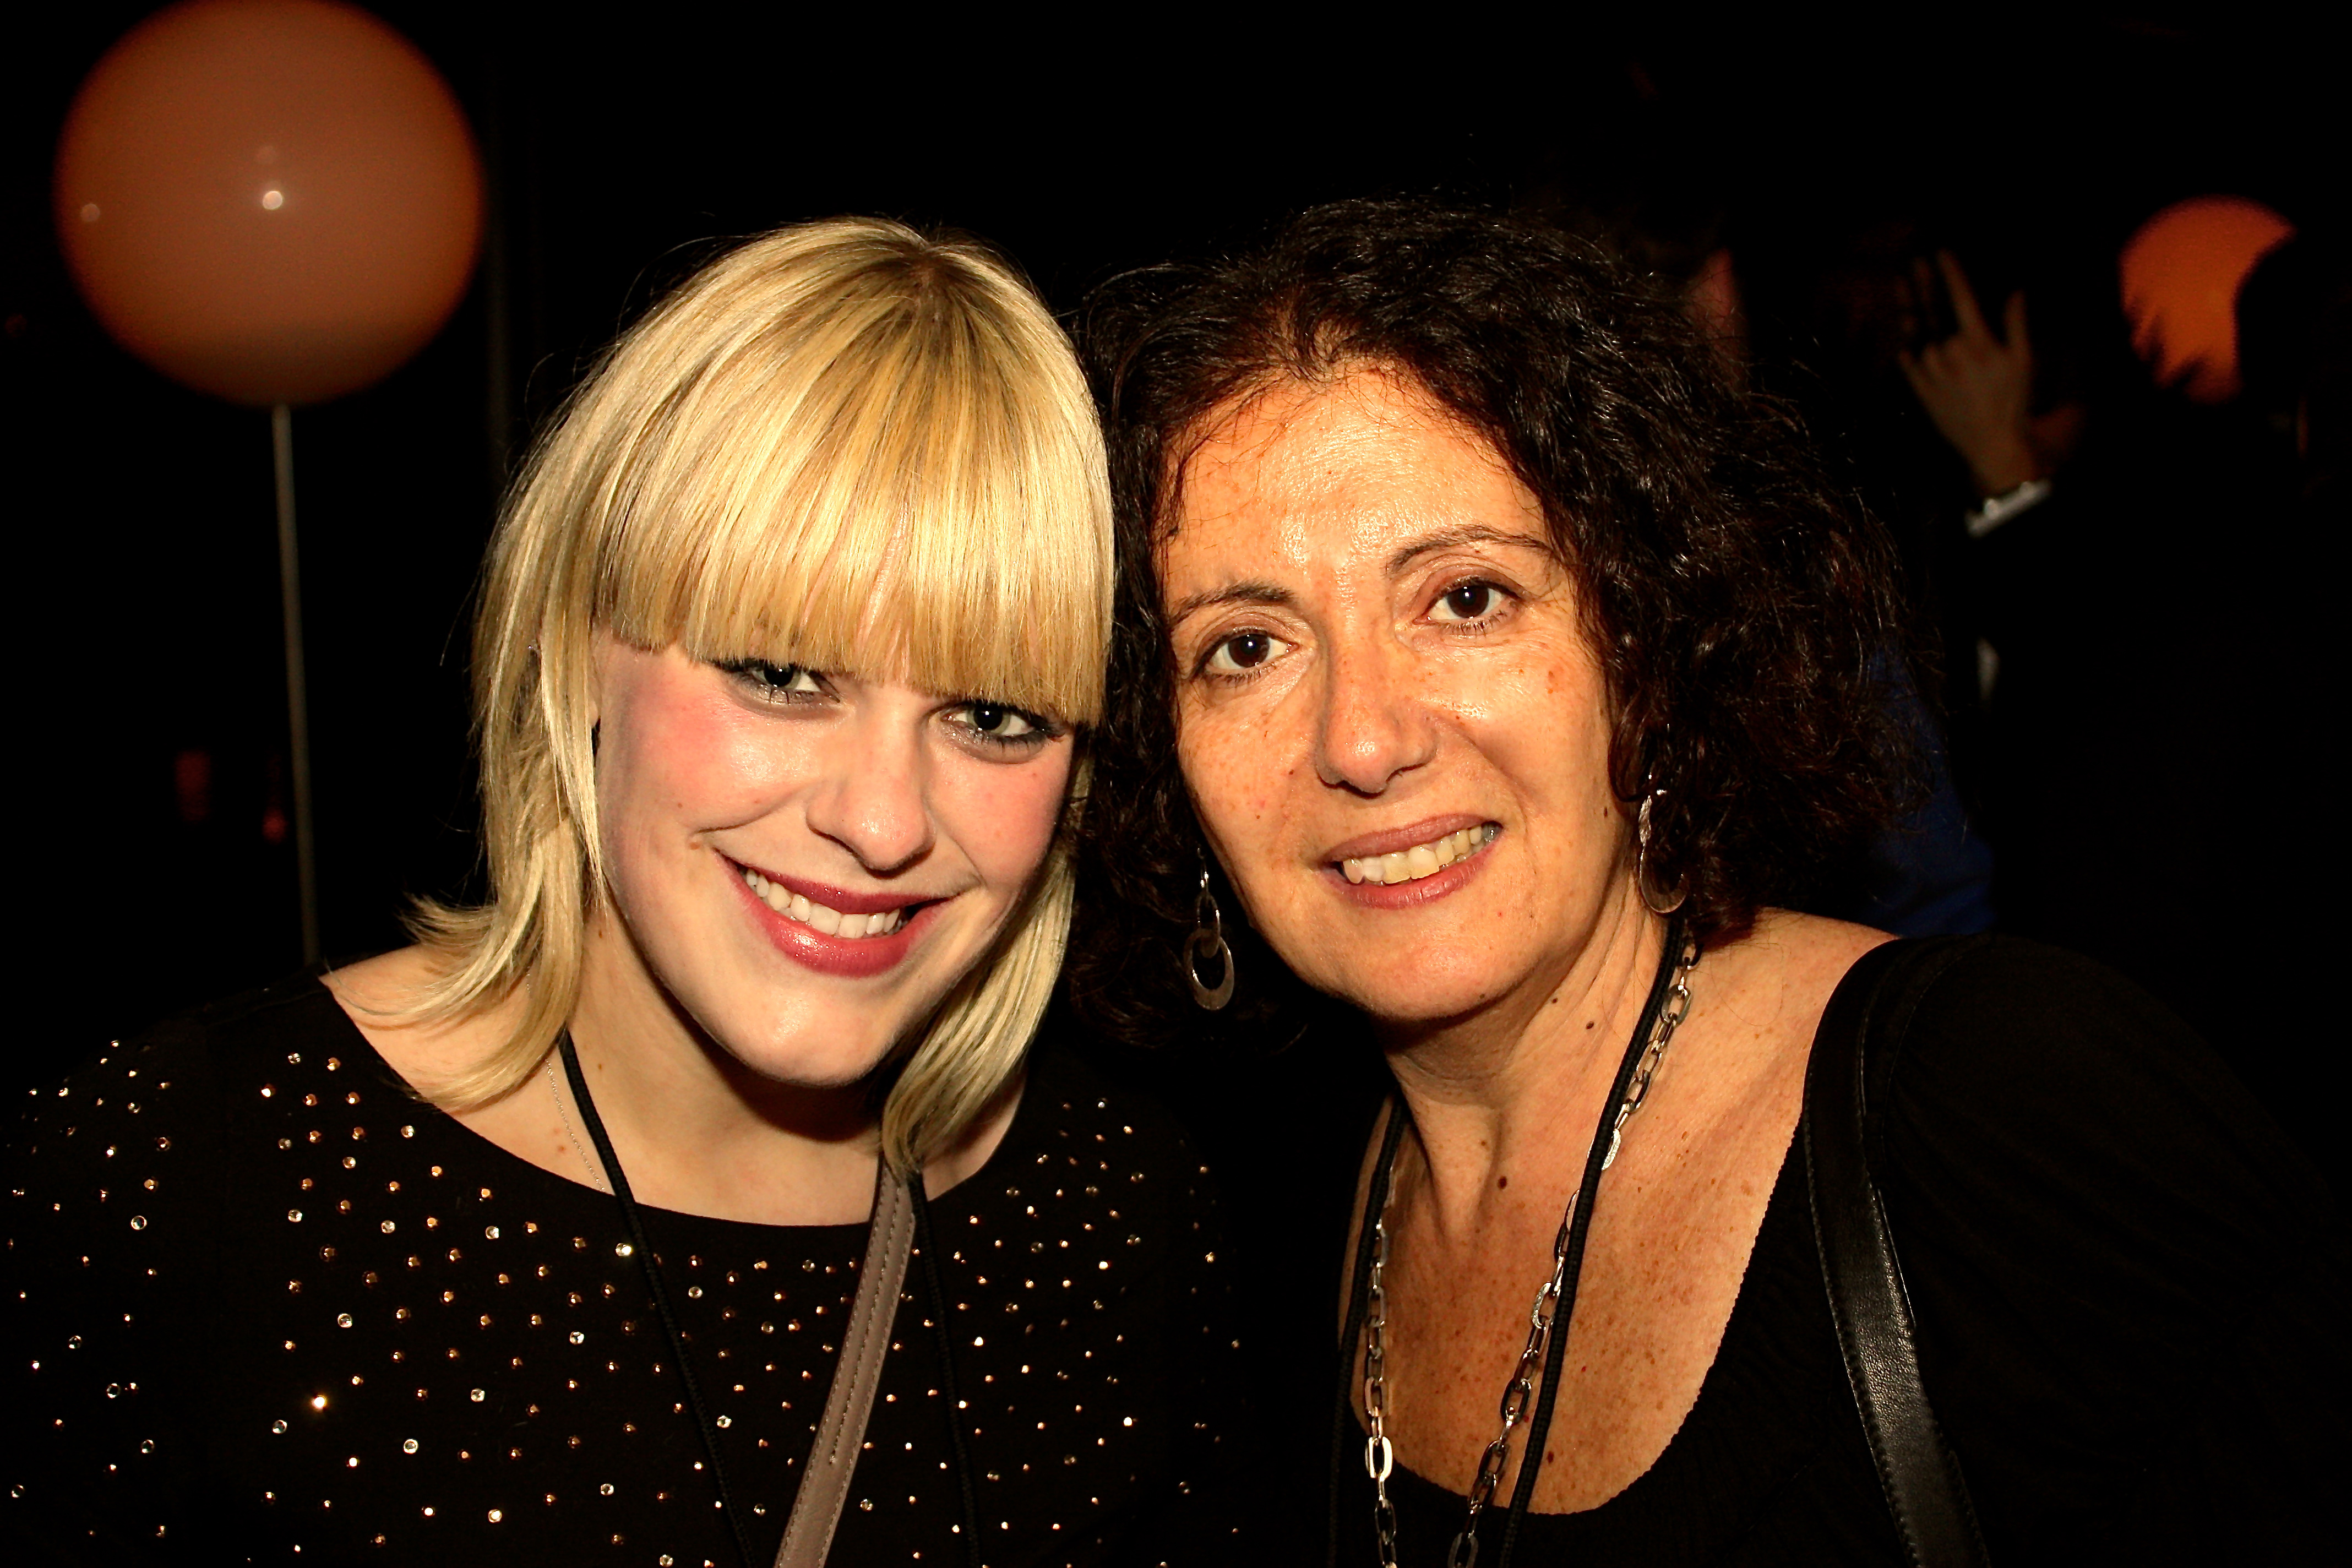 Kaylee Bird & Sharon Badal at 2011 Sloan Film Summit.